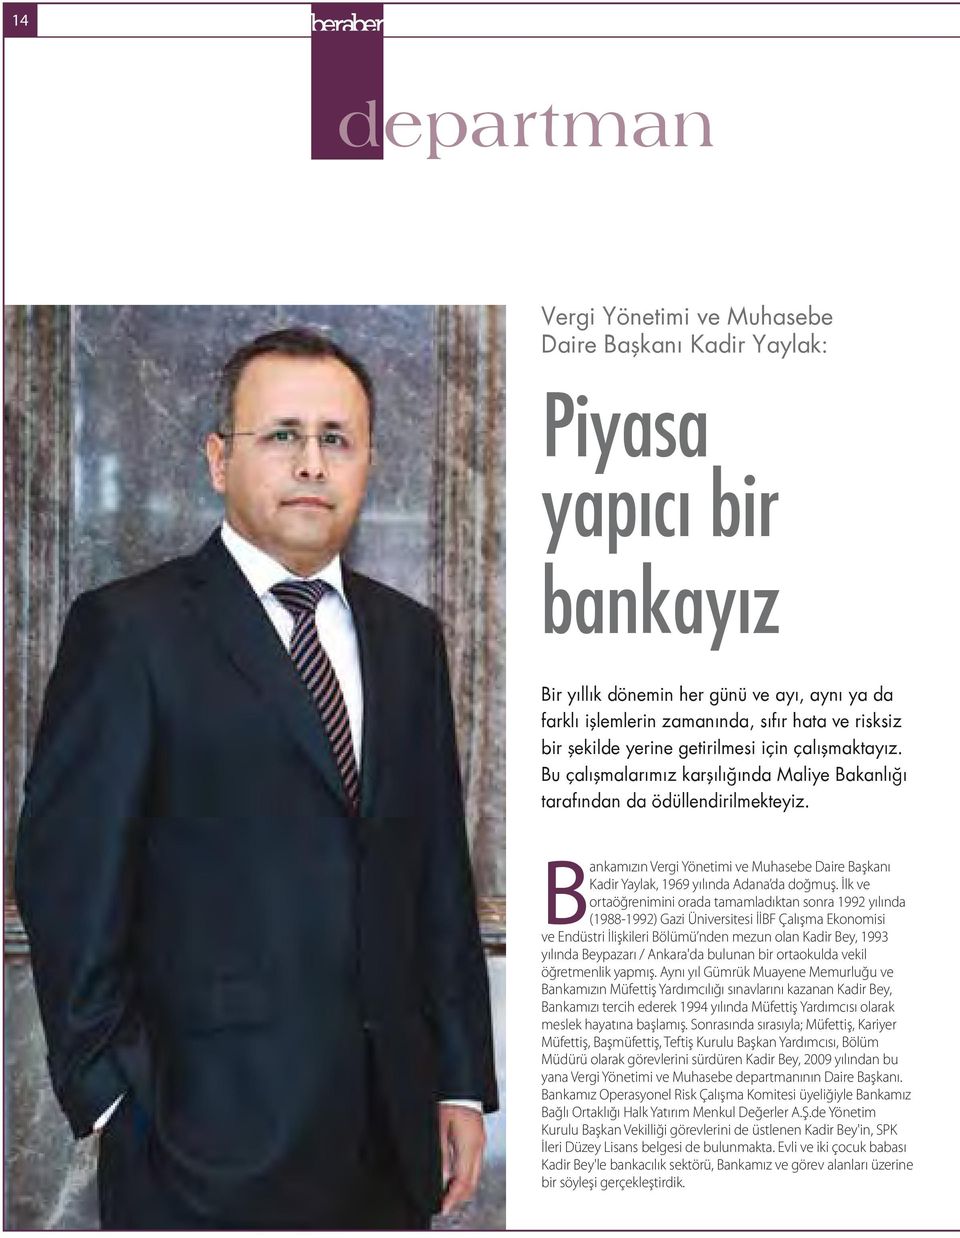 Bankamızın Vergi Yönetimi ve Muhasebe Daire Başkanı Kadir Yaylak, 1969 yılında Adana da doğmuş.